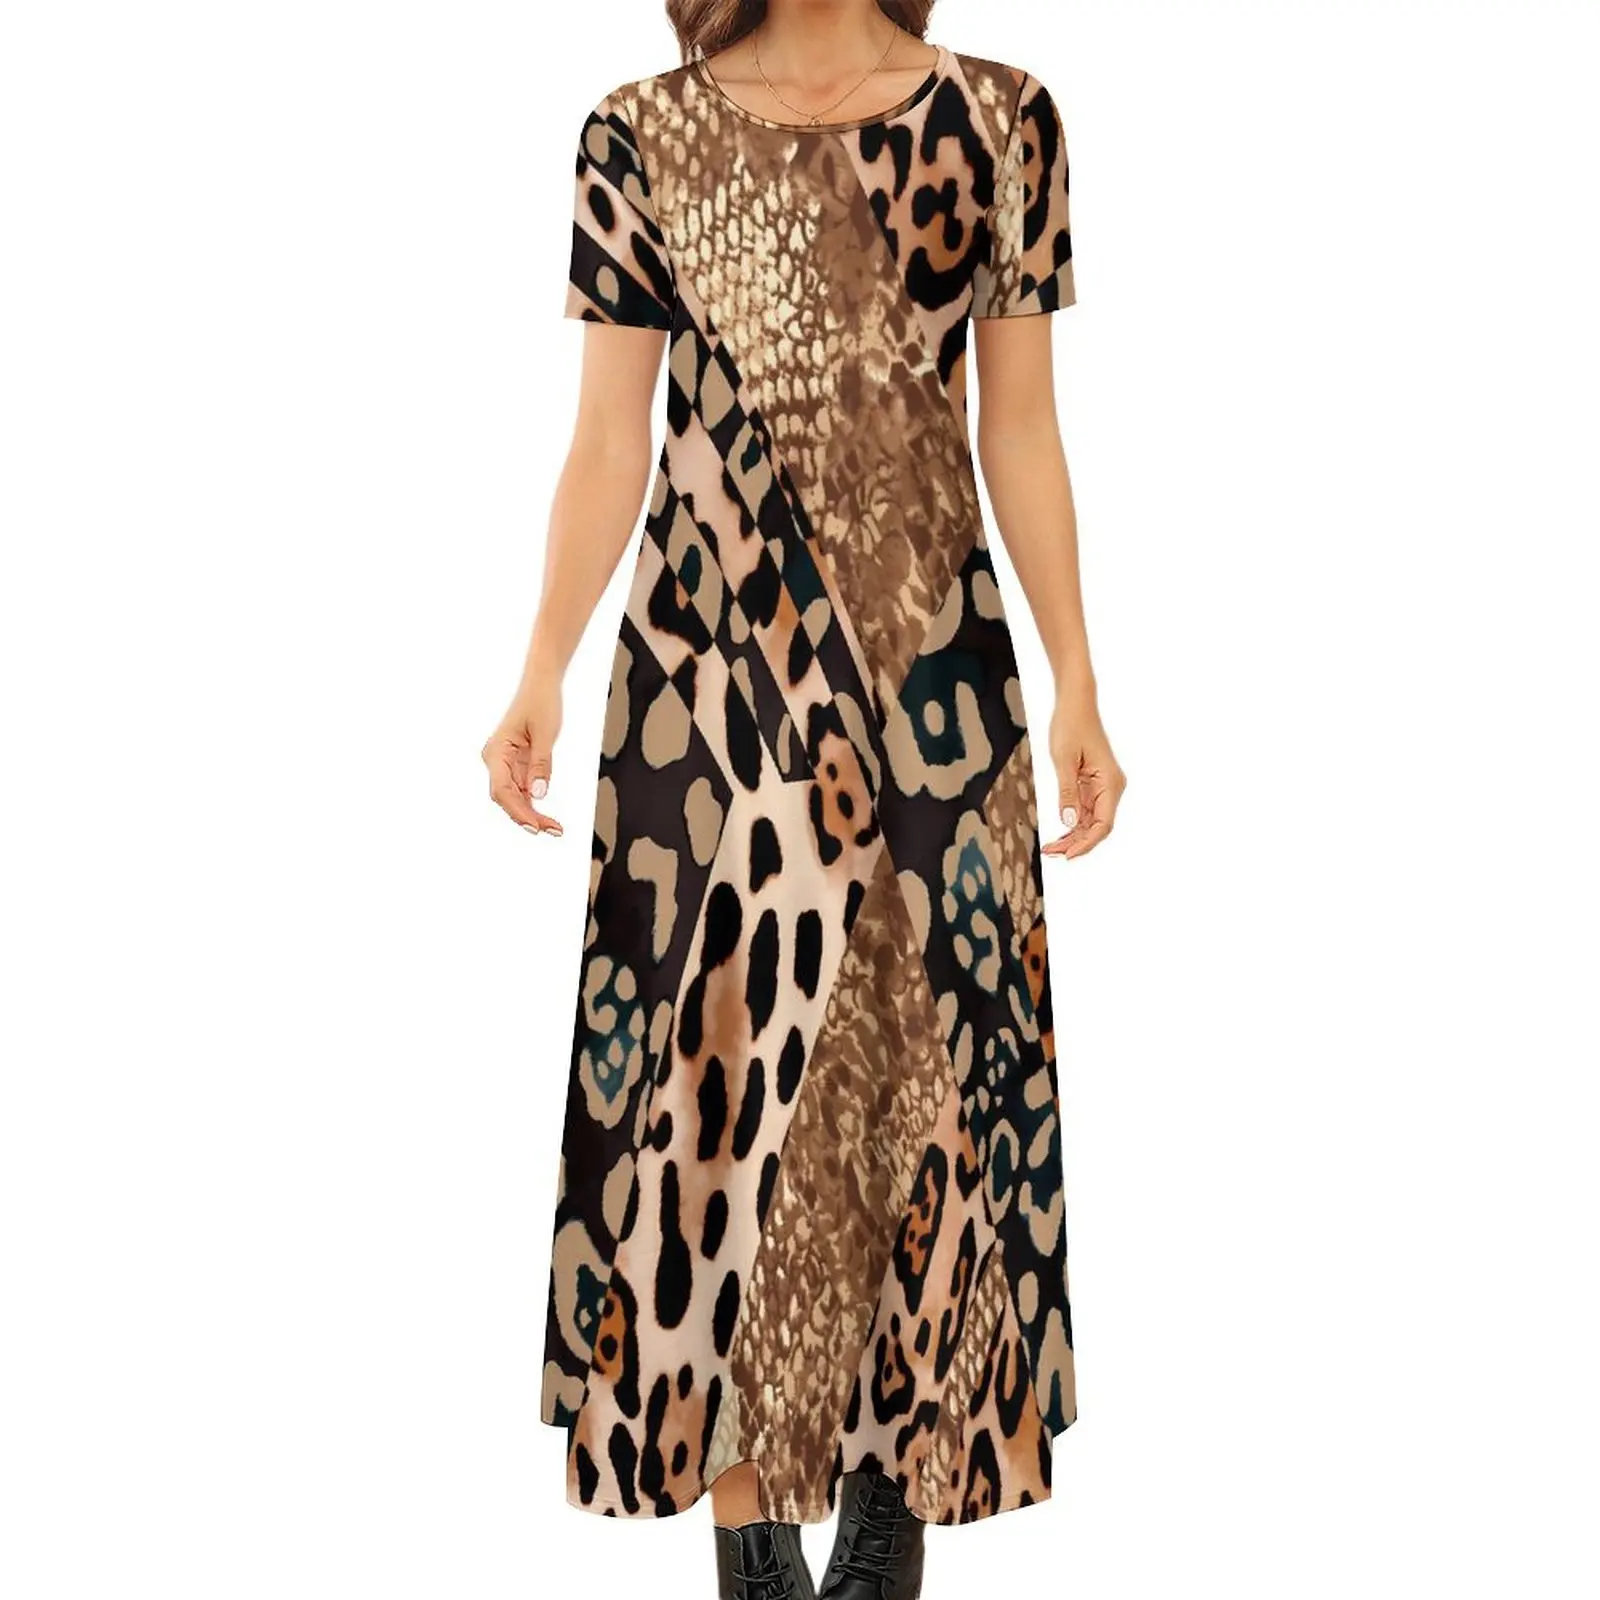 

Abstract Snakeskin Dress Leopard Print Vintage Maxi Dress Women Short Sleeve Street Style Bohemia Long Dresses Big Size 6XL 7XL